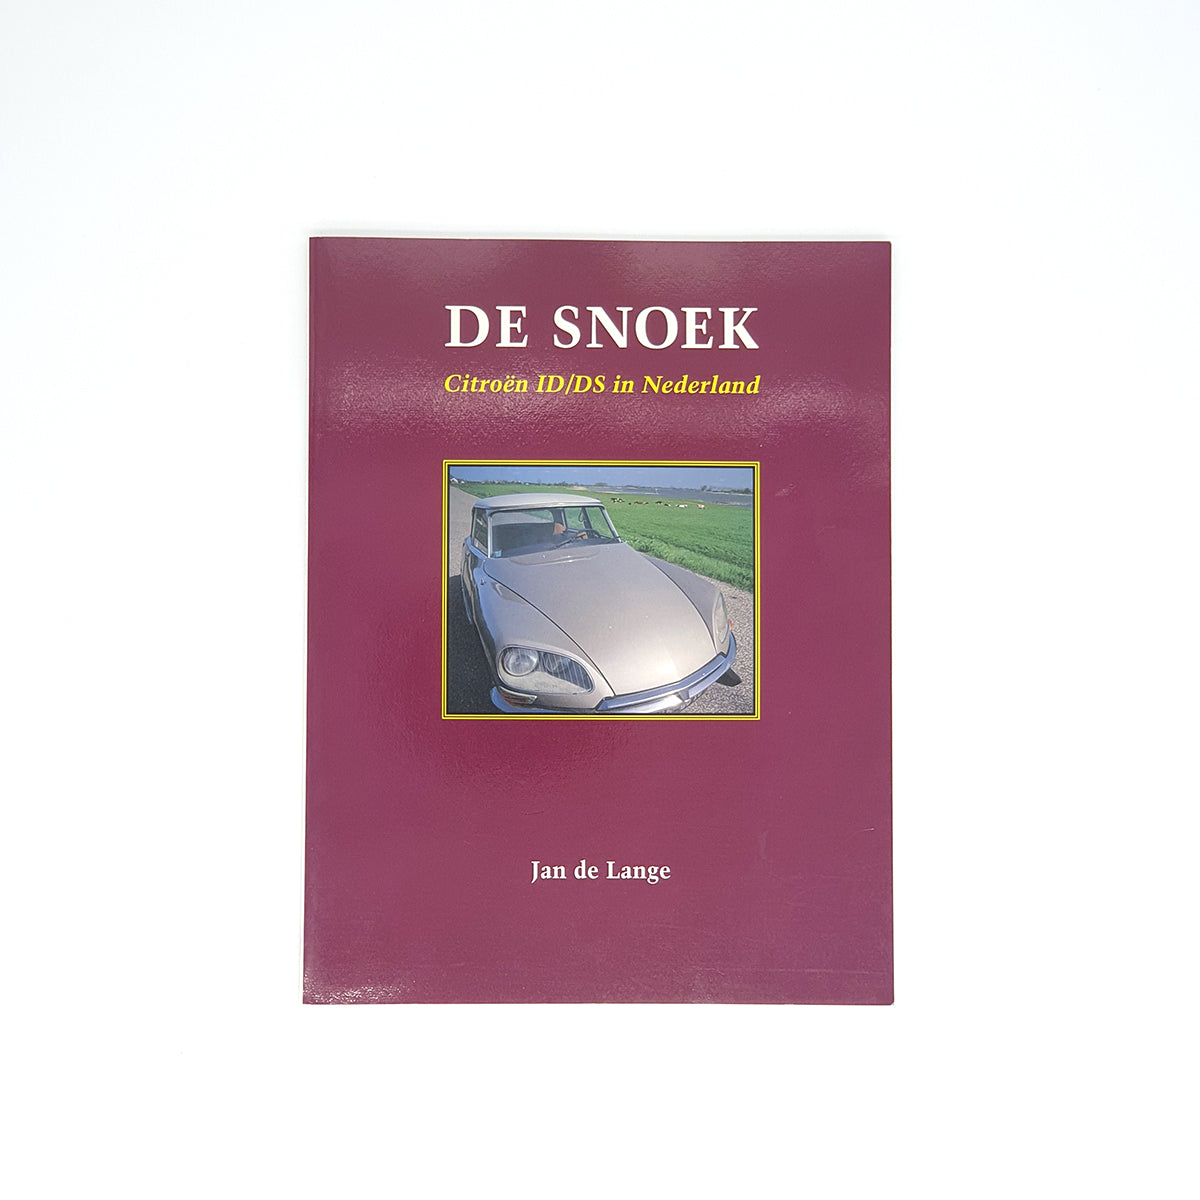 De Snoek, de Citroën ID/DS in Nederland